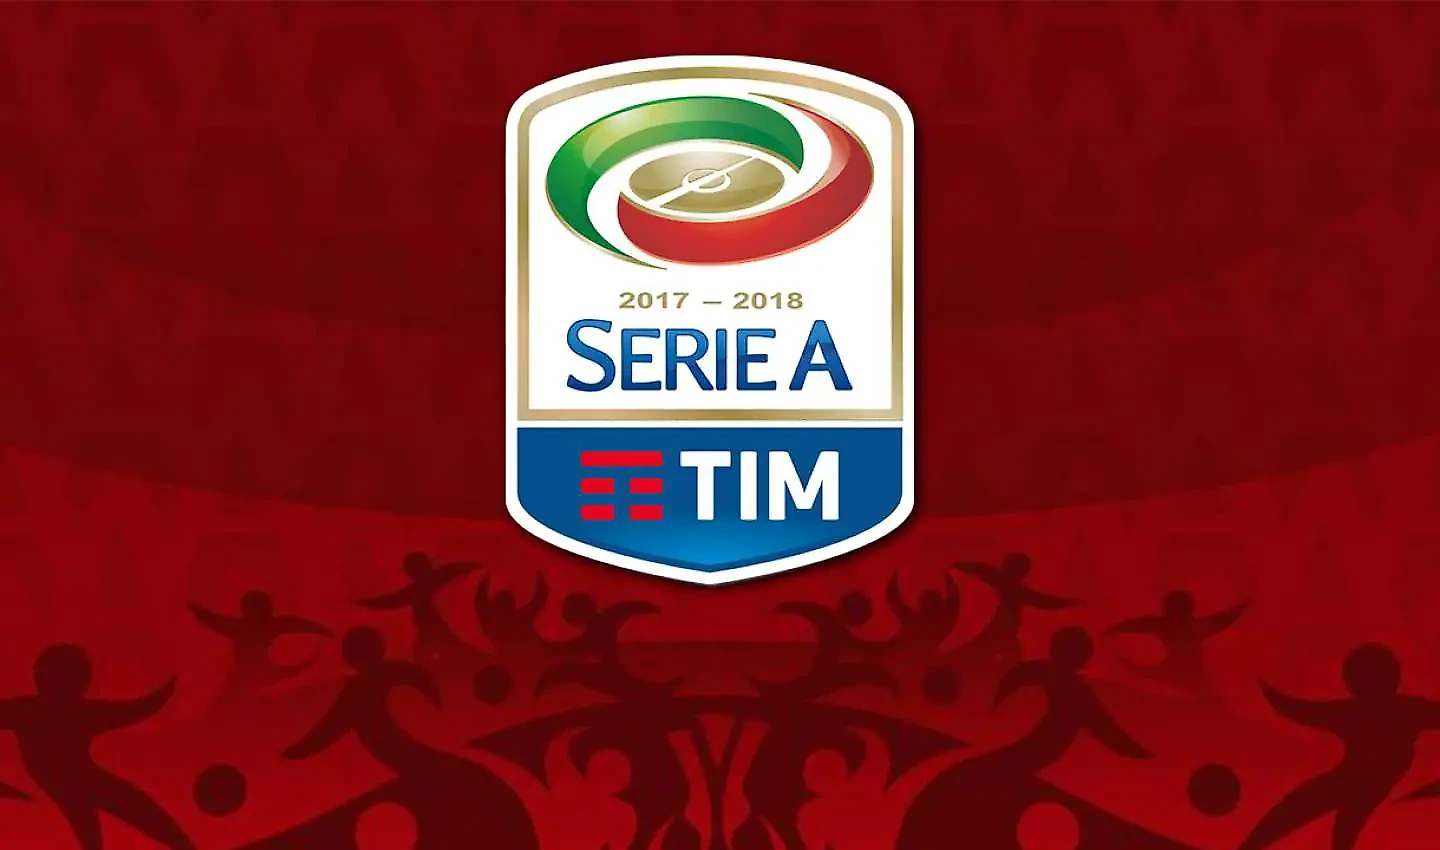 Serie A 2017/2018